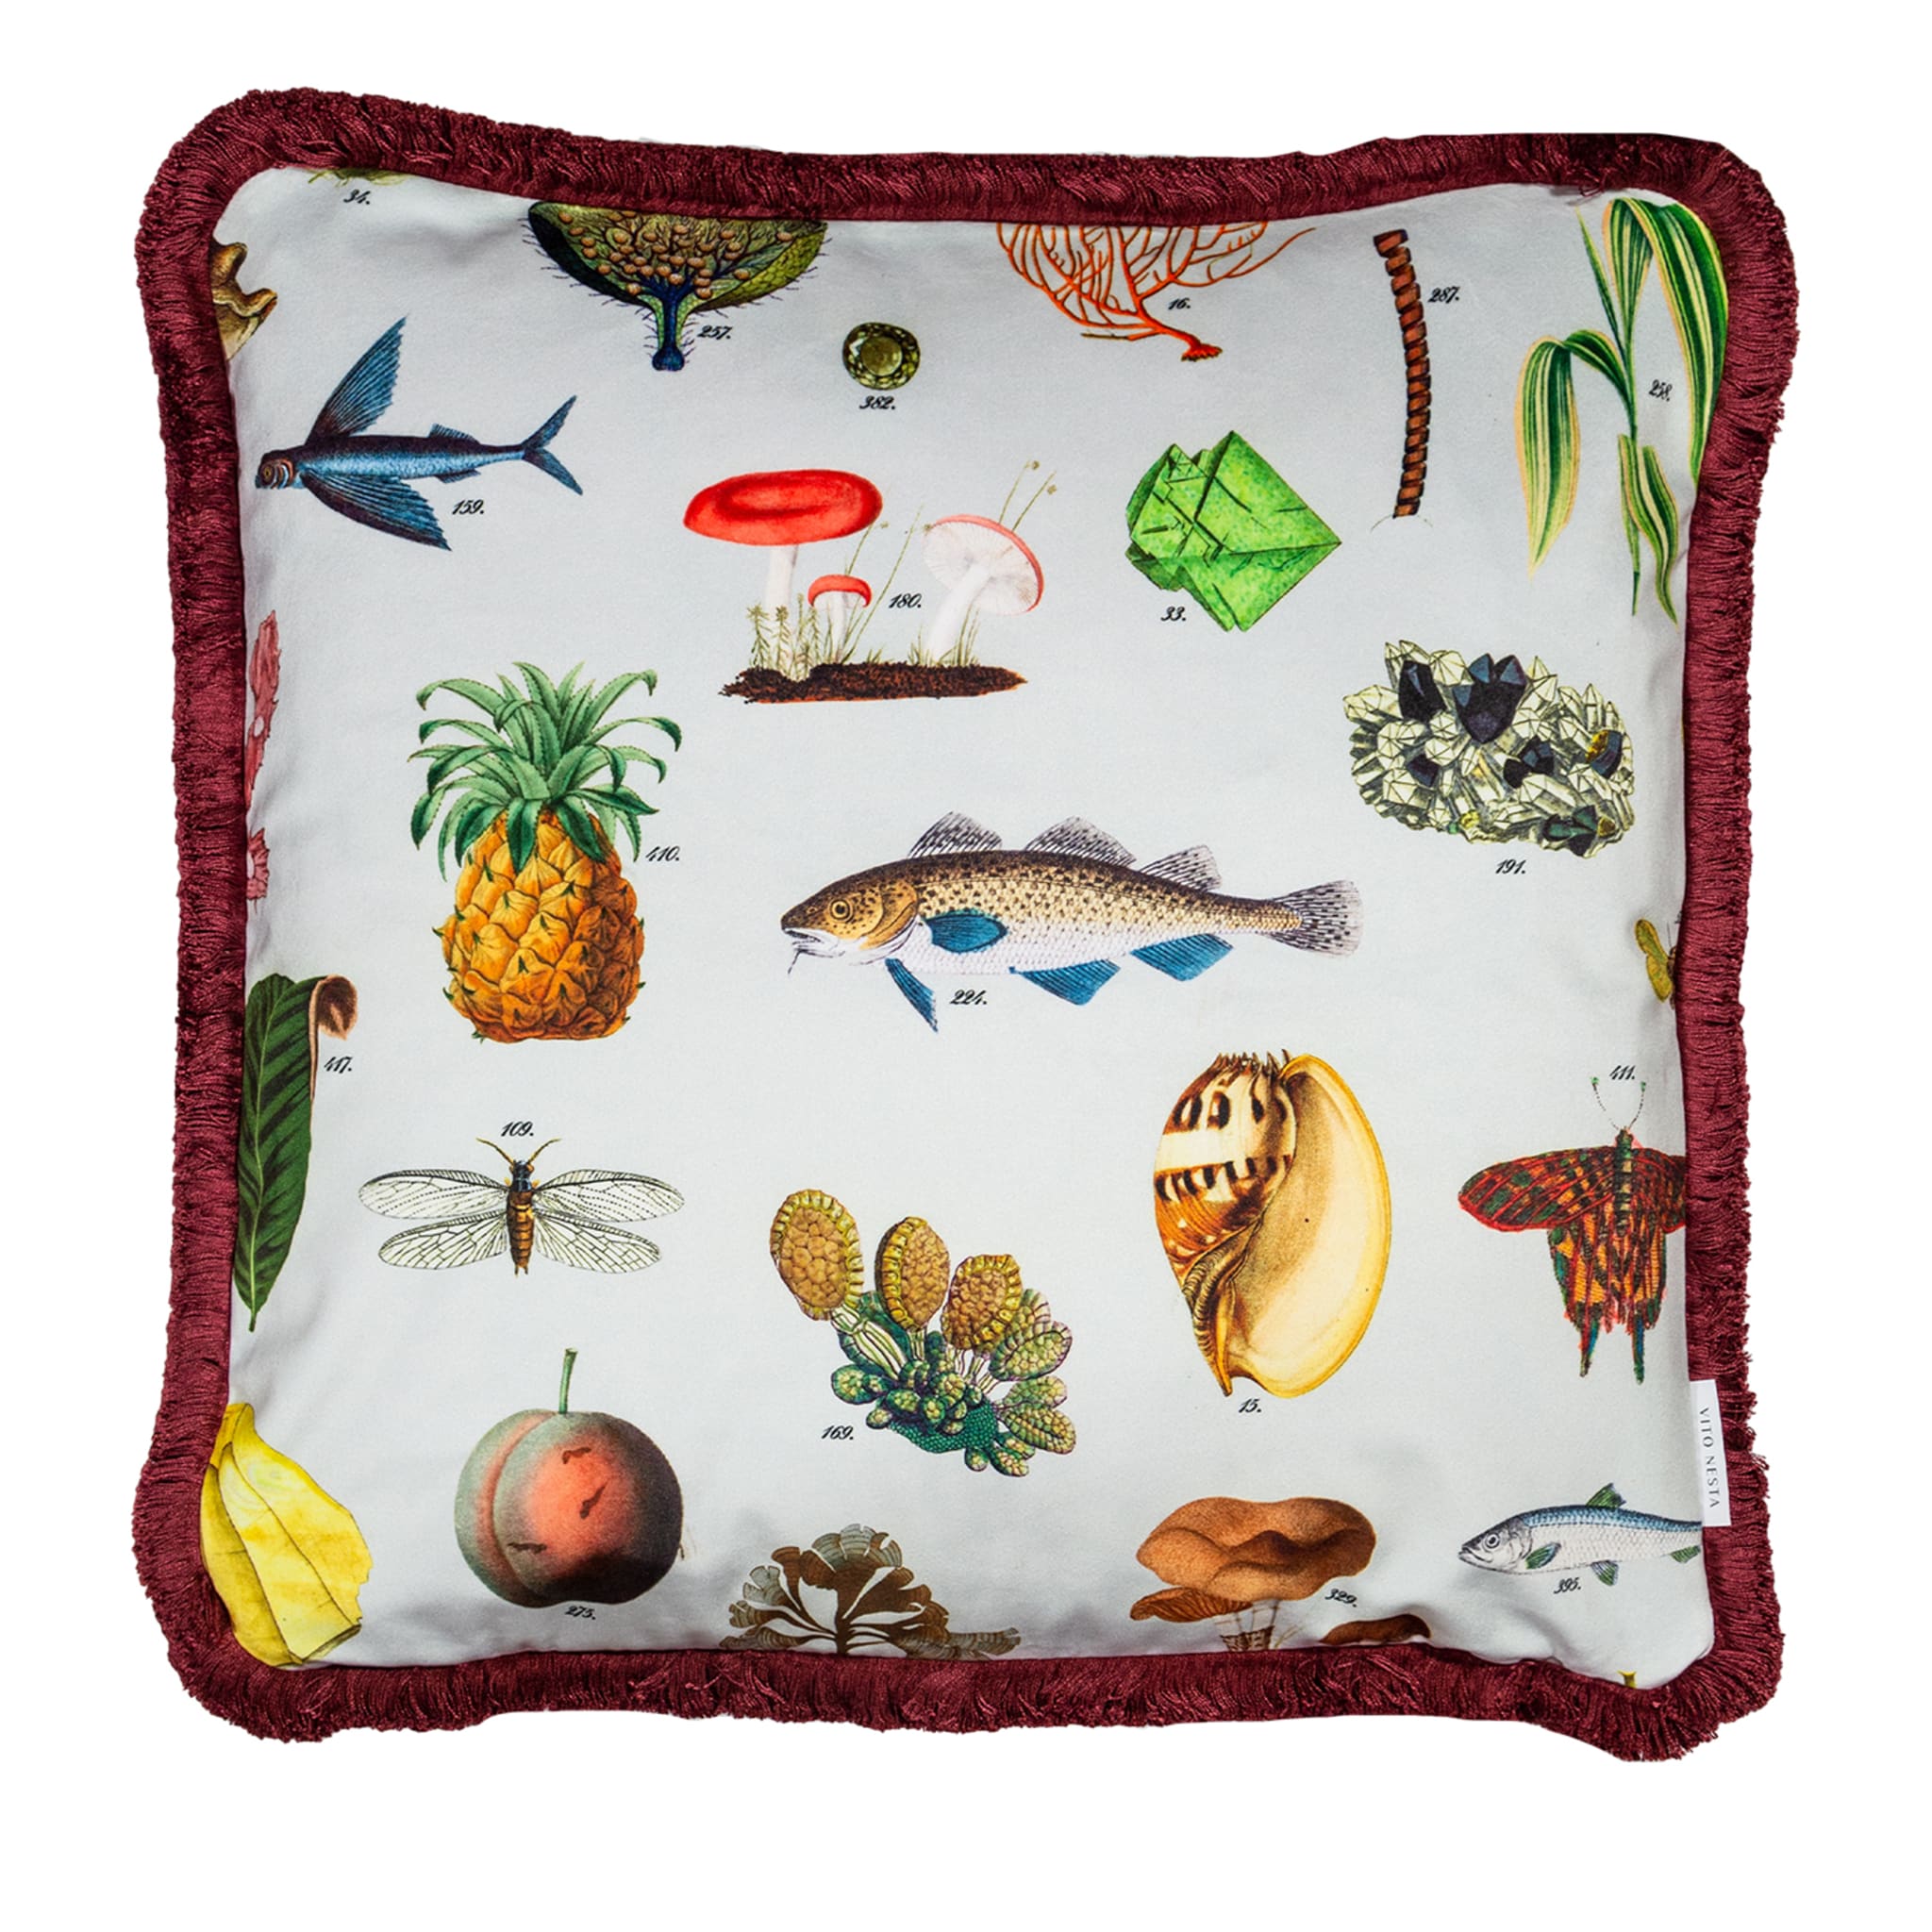 Cabinet De Curiosités Velvet Cushion With Natural Elements #2 - Main view